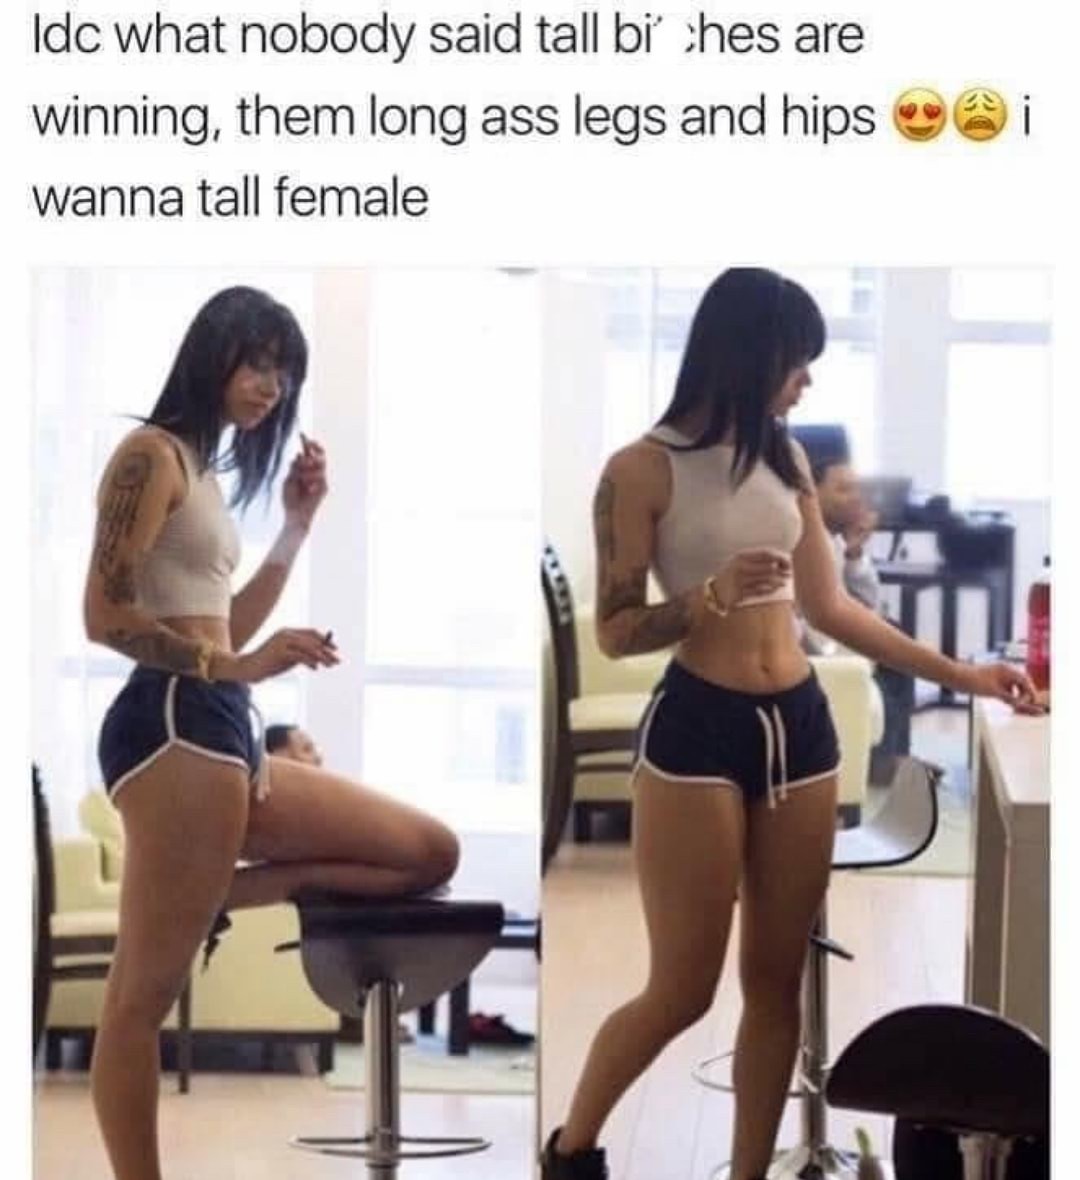 Long legs please men - meme